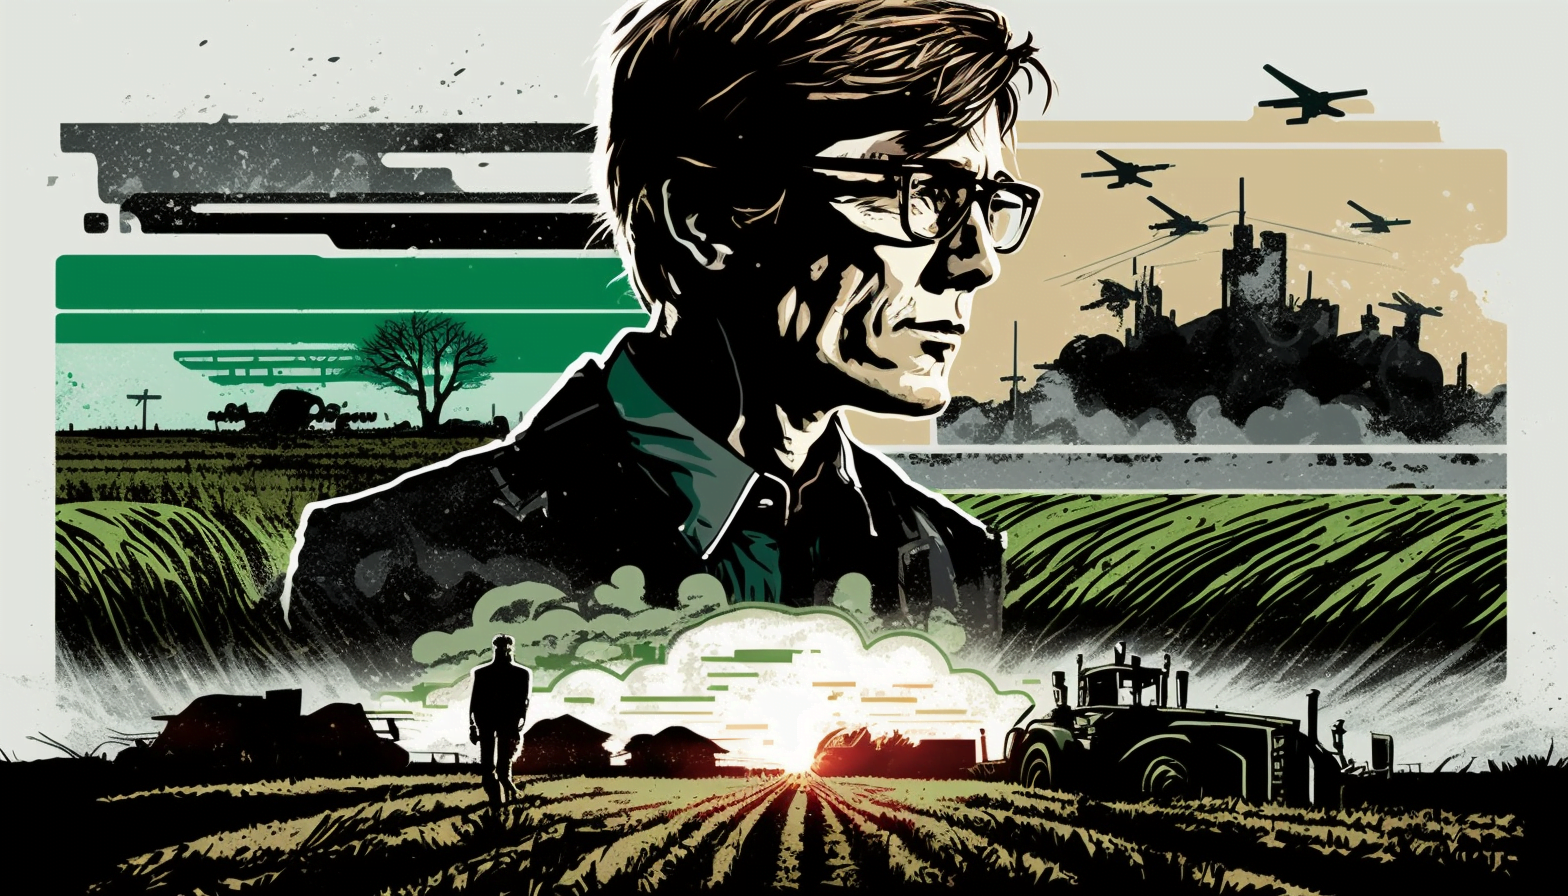 Revelando a estratégia: por que Bill Gates está investindo maciçamente em terras agrícolas?